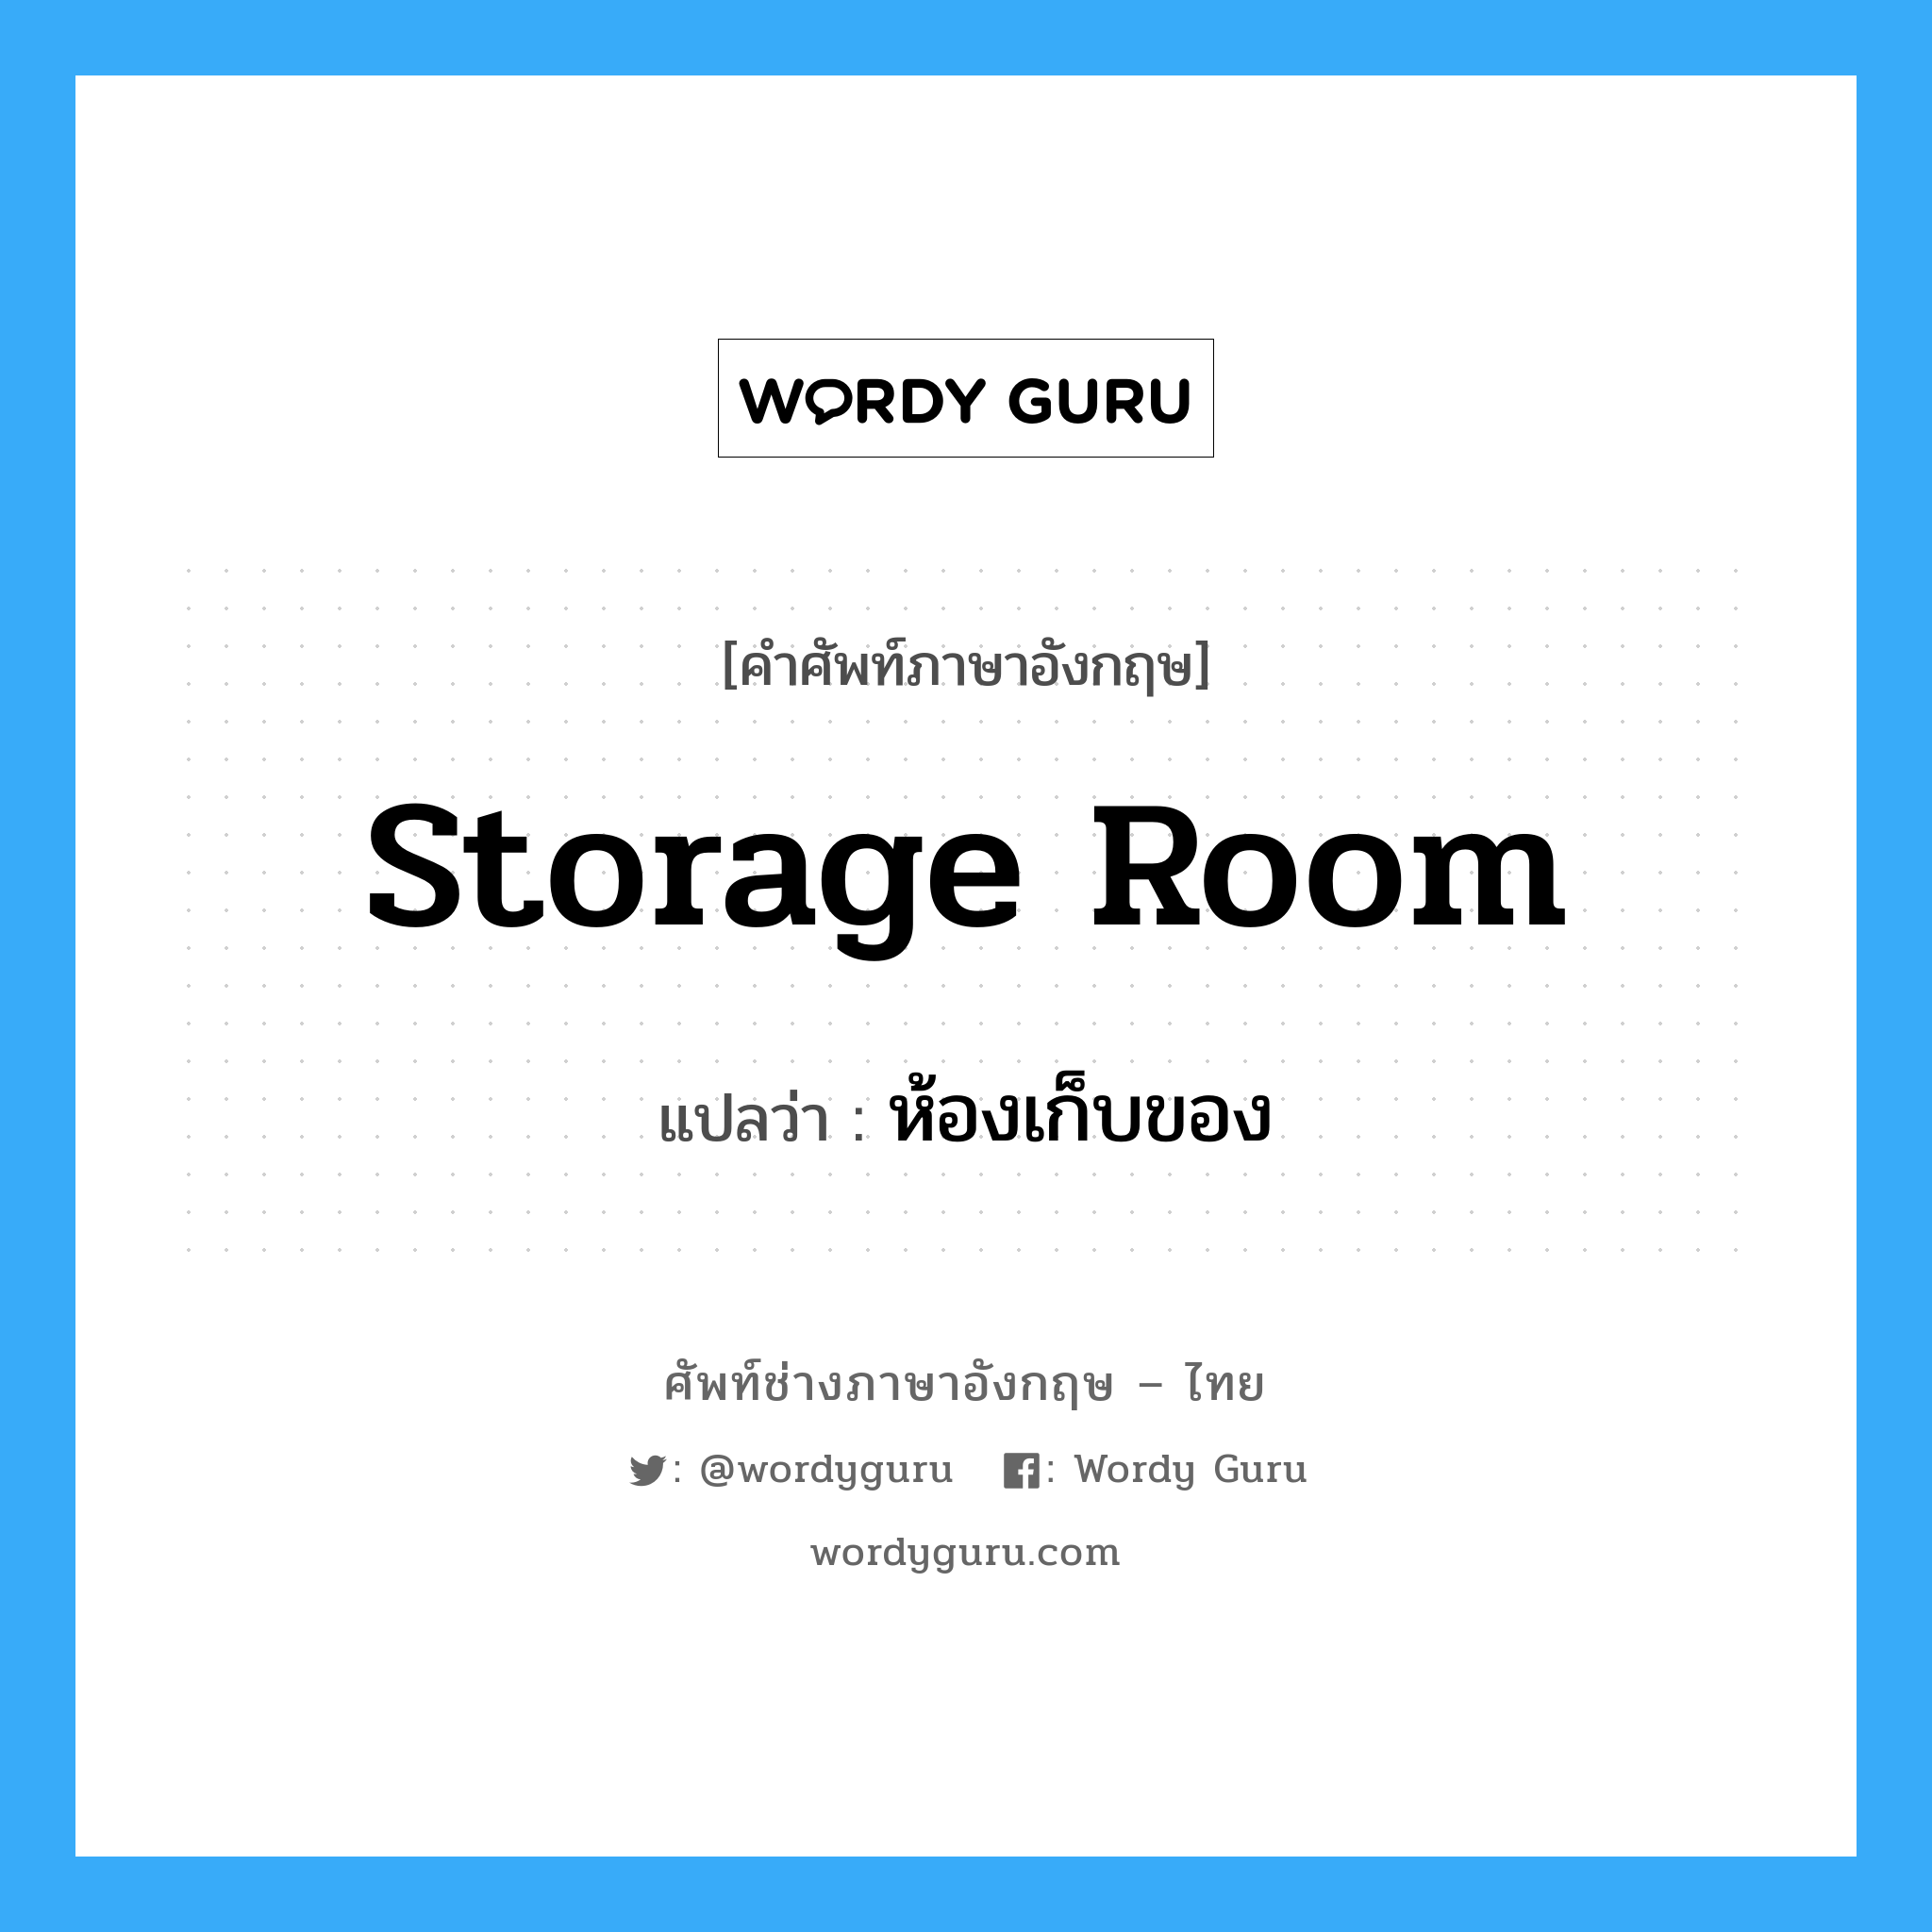 storage room แปลว่า?, คำศัพท์ช่างภาษาอังกฤษ - ไทย storage room คำศัพท์ภาษาอังกฤษ storage room แปลว่า ห้องเก็บของ